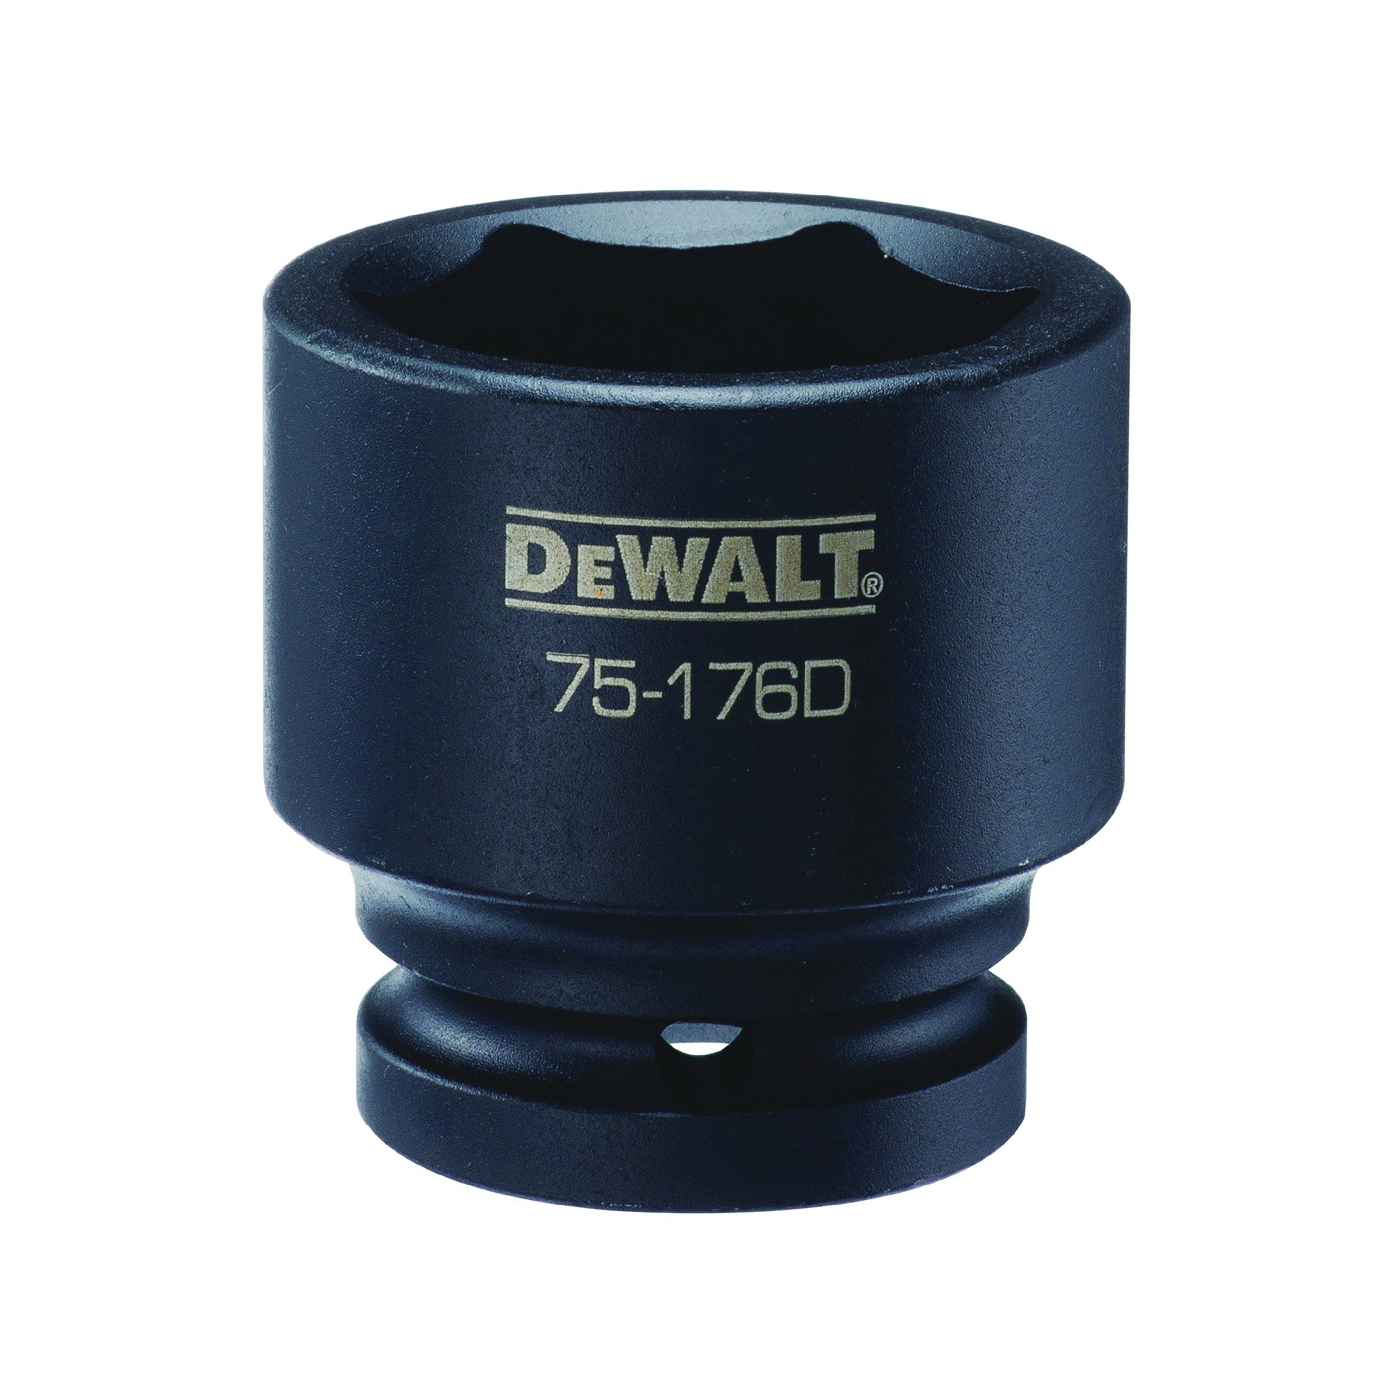 DeWALT DWMT75176OSP Impact Socket, 38 mm Socket, 3/4 in Drive, 6-Point, CR-440 Steel, Black Oxide